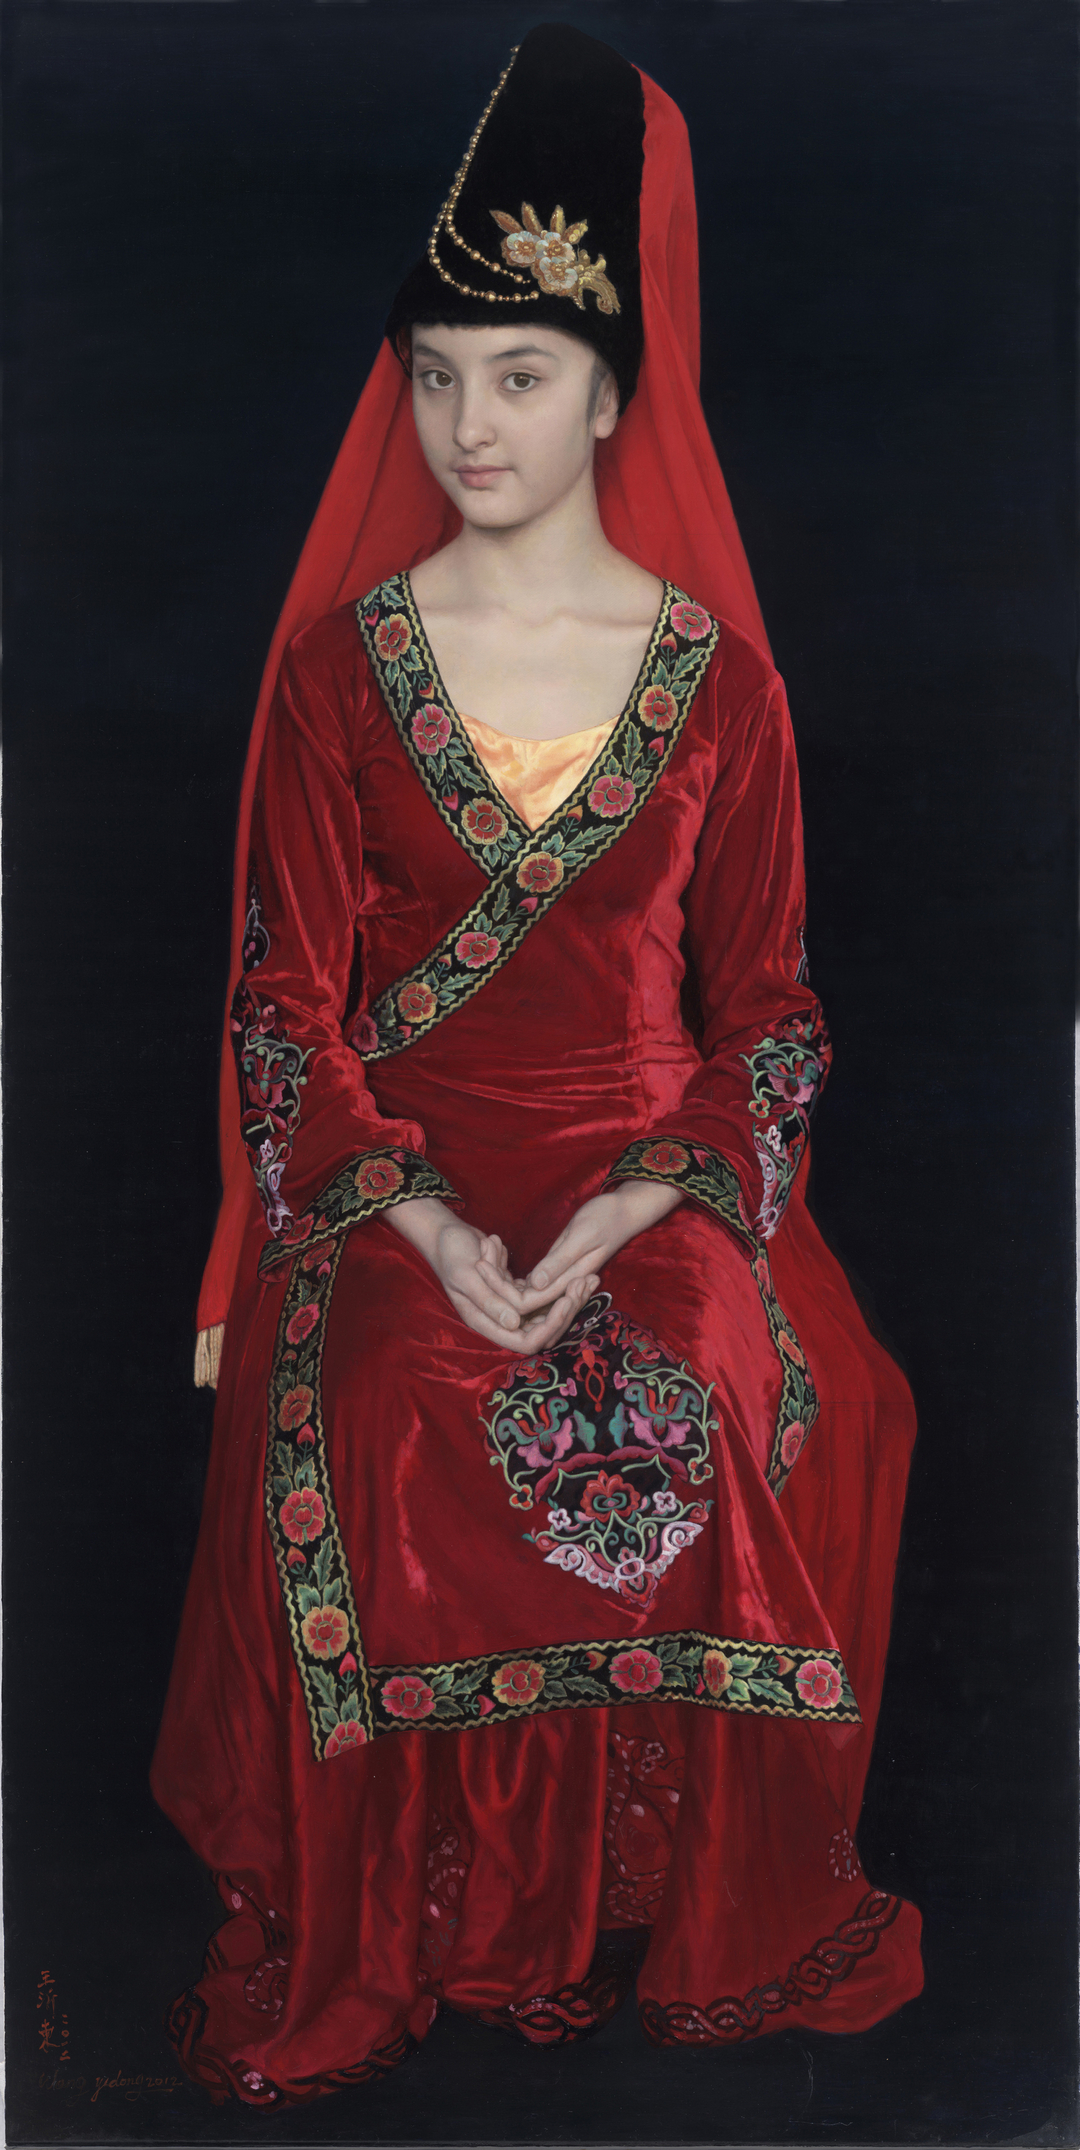 2012 王沂东 布面油画 盛装的维吾尔族姑娘 60X120CM1 